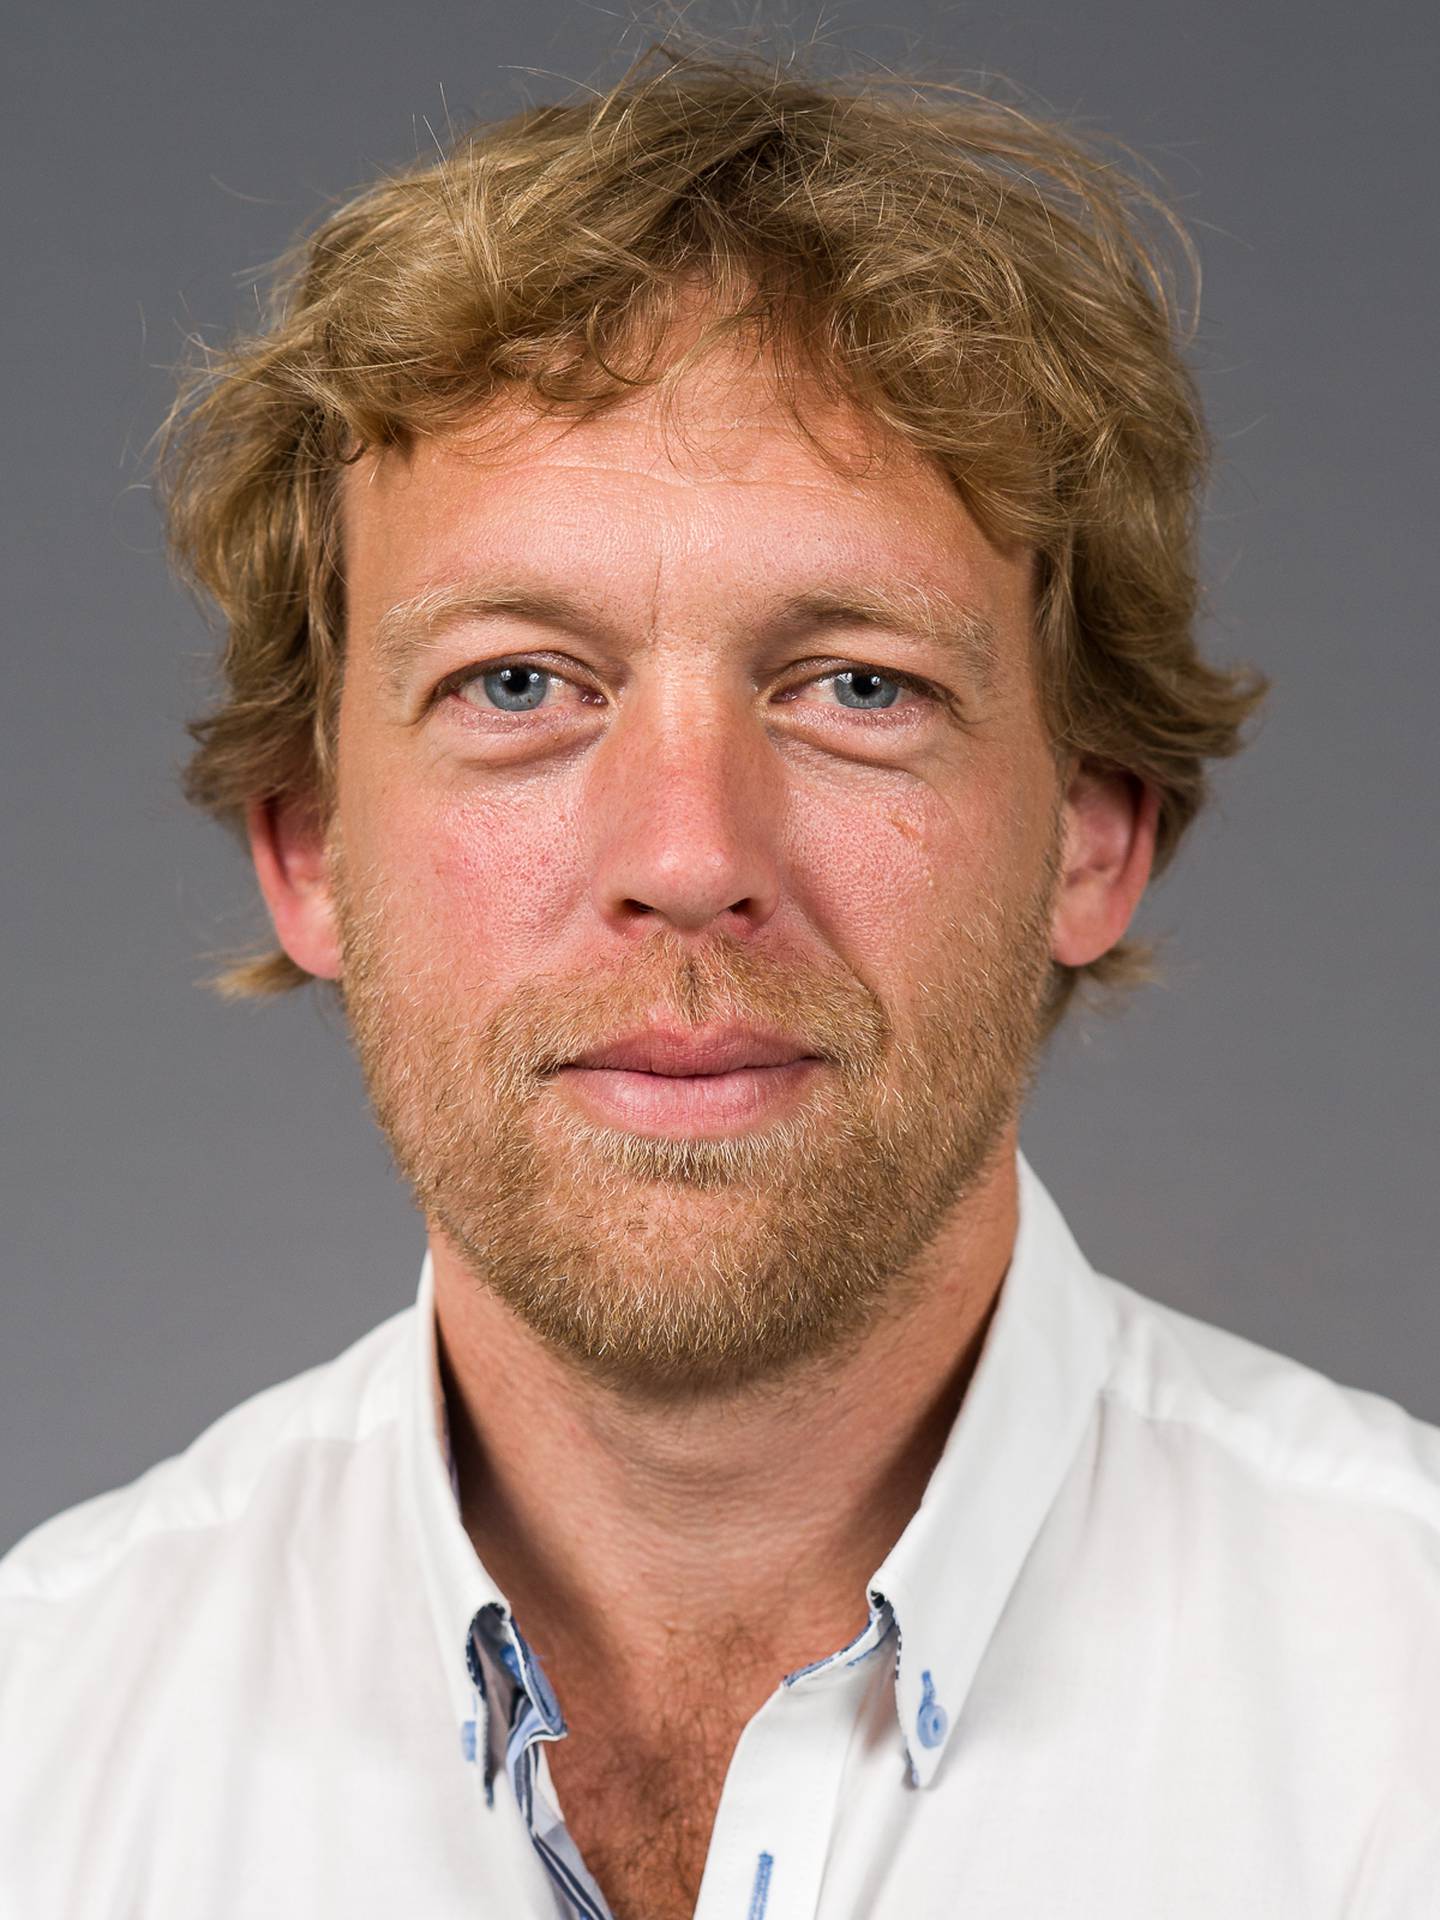 Professor Vegard Bruun Bratholm Wyller er prosjektleder for en studie som ser på langtidseffekter etter covid-19 hos unge.